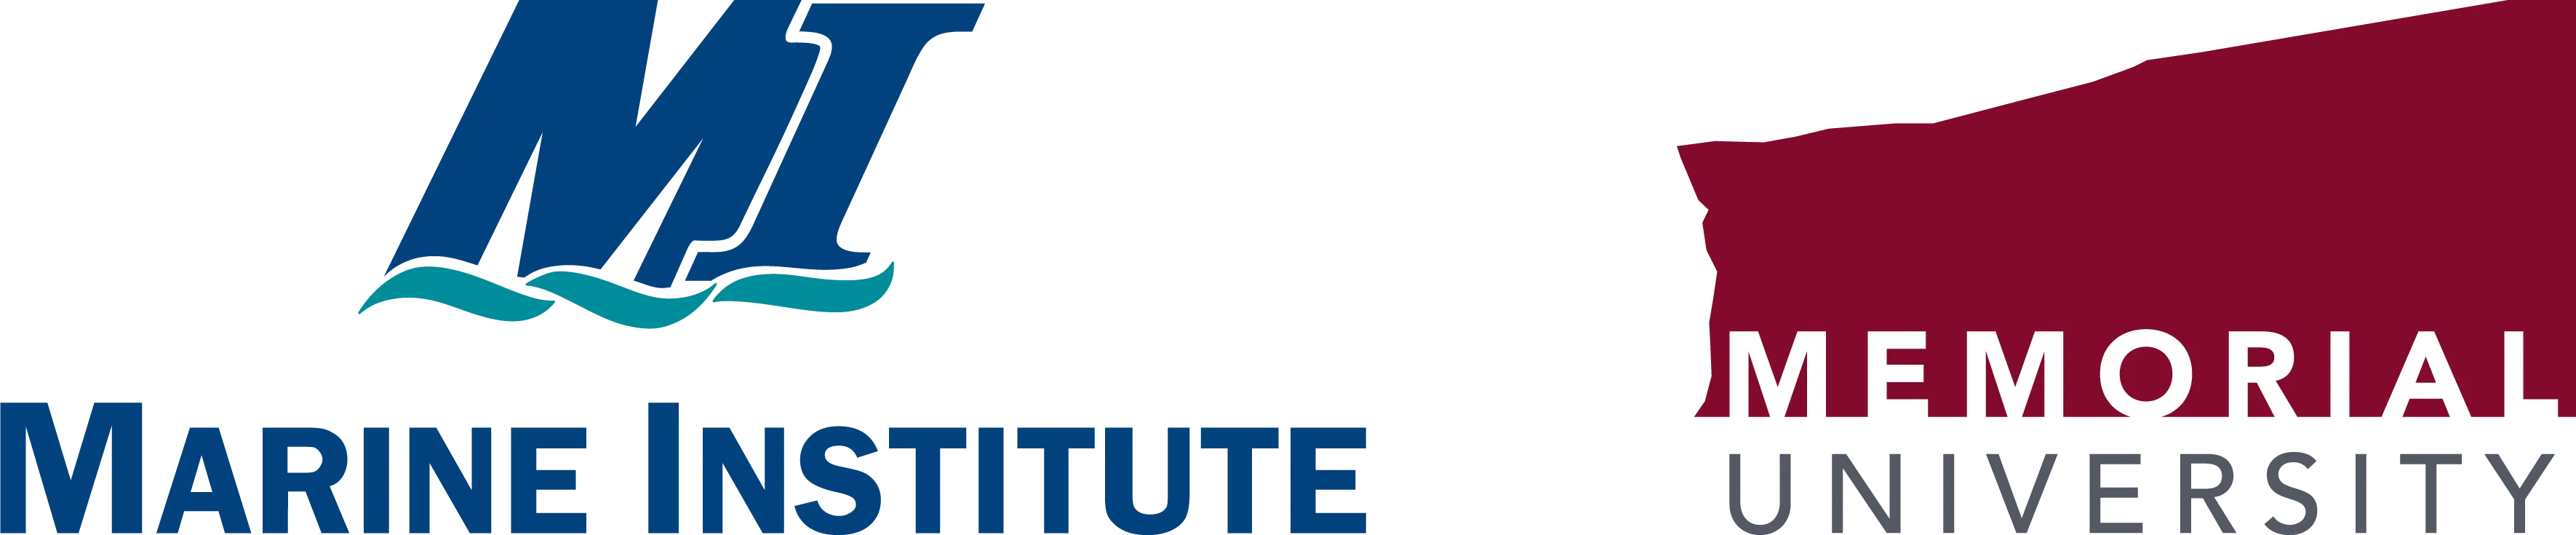 Marine Institute and Memorial University Logo